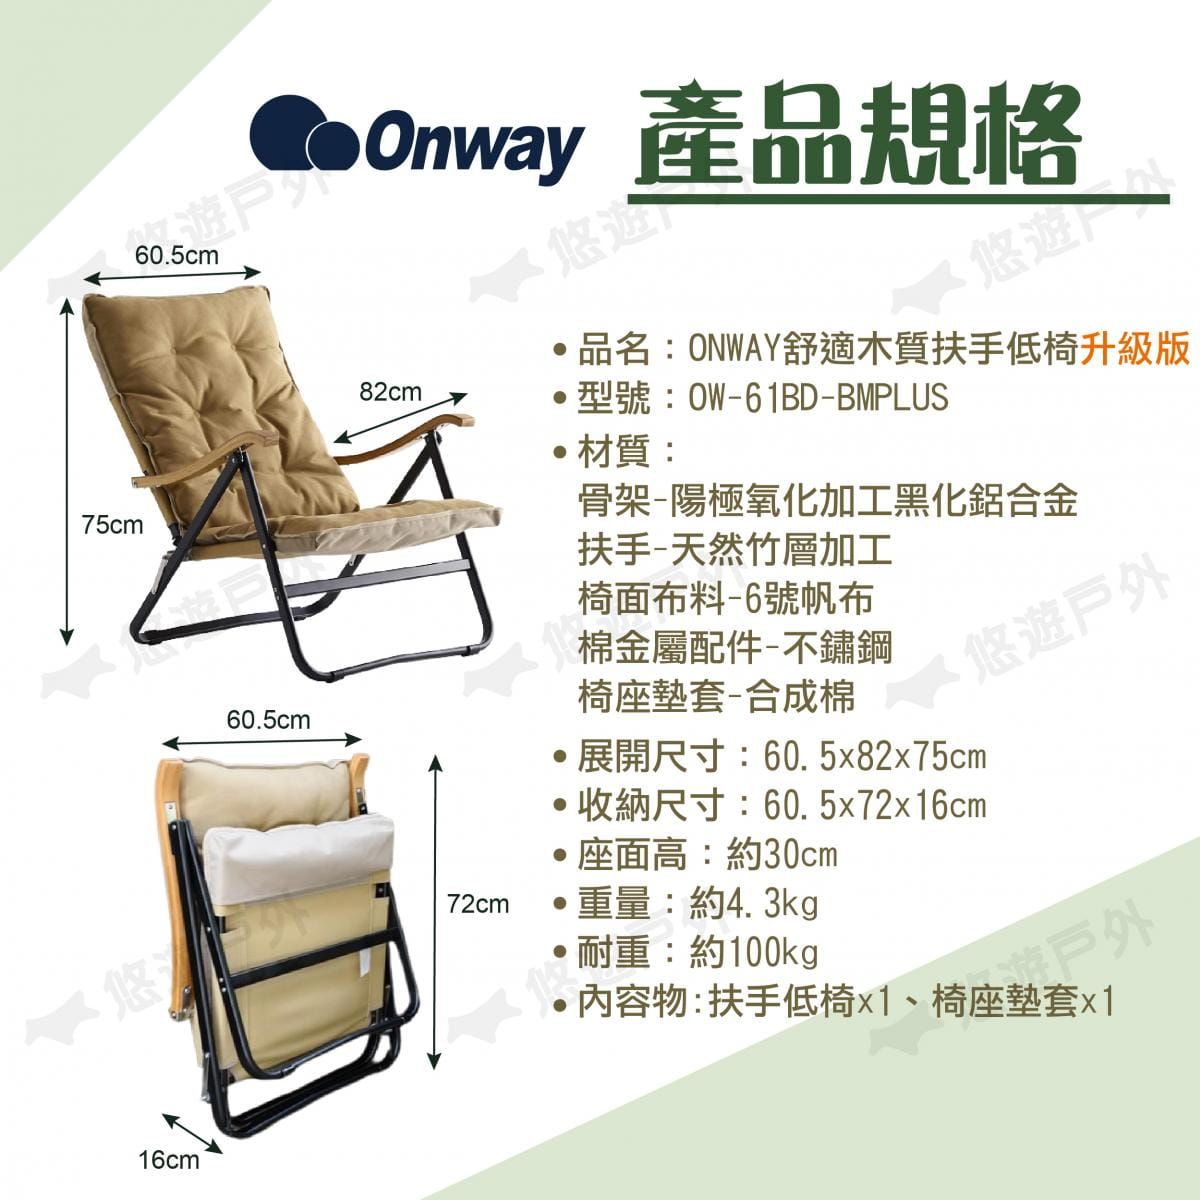 【ONWAY】舒適木質扶手低椅升級版 OW-61BD-BMPLUS (悠遊戶外) 6